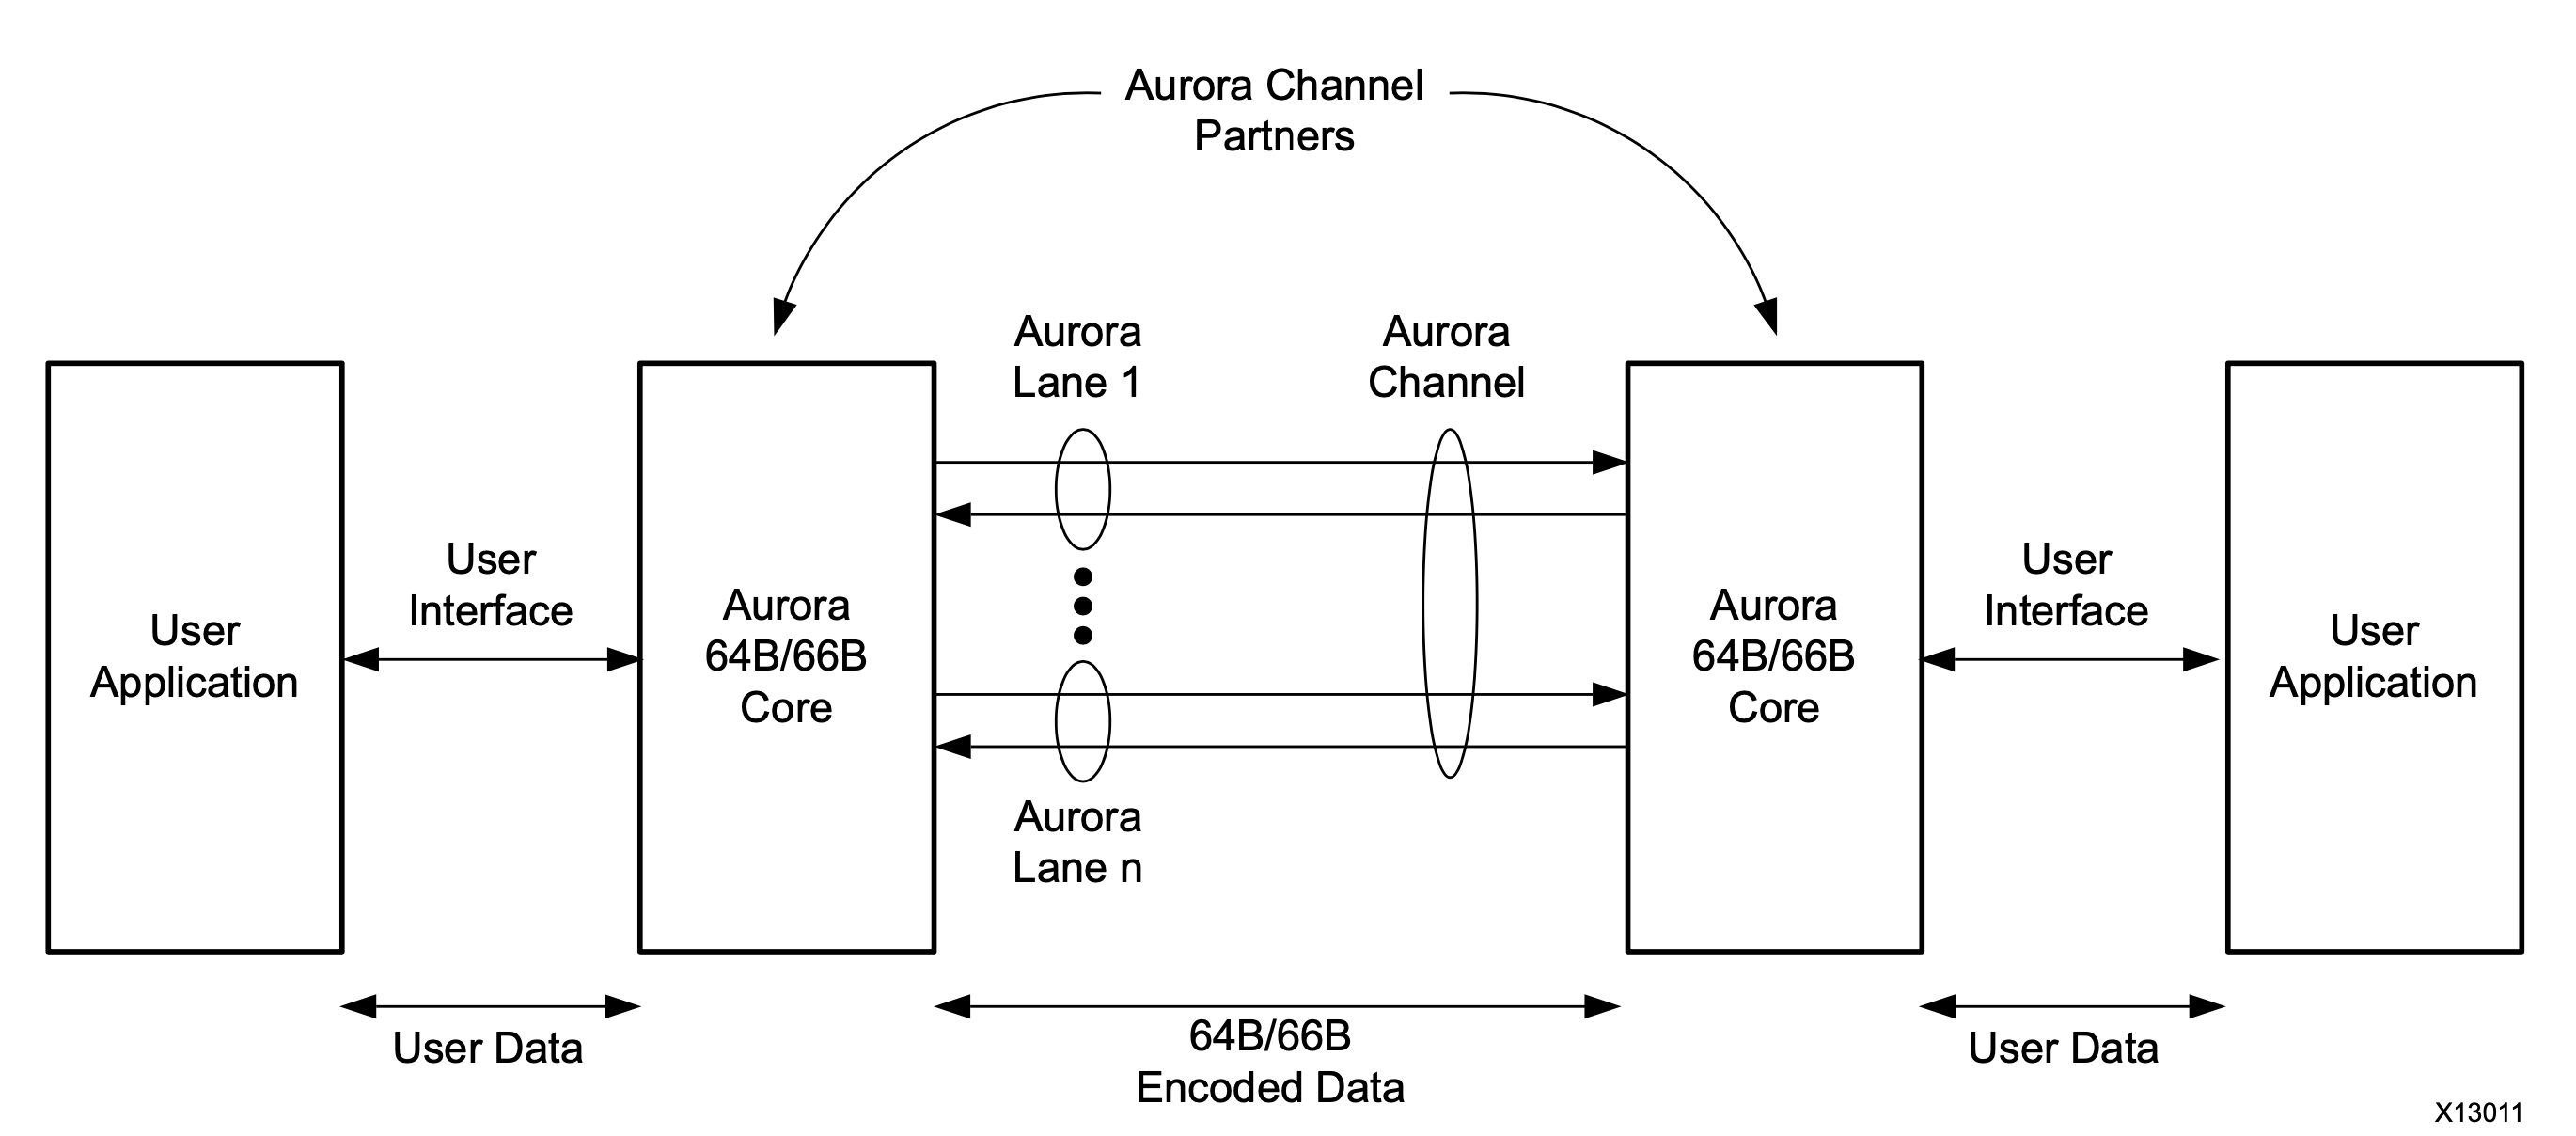 Aurora Channel